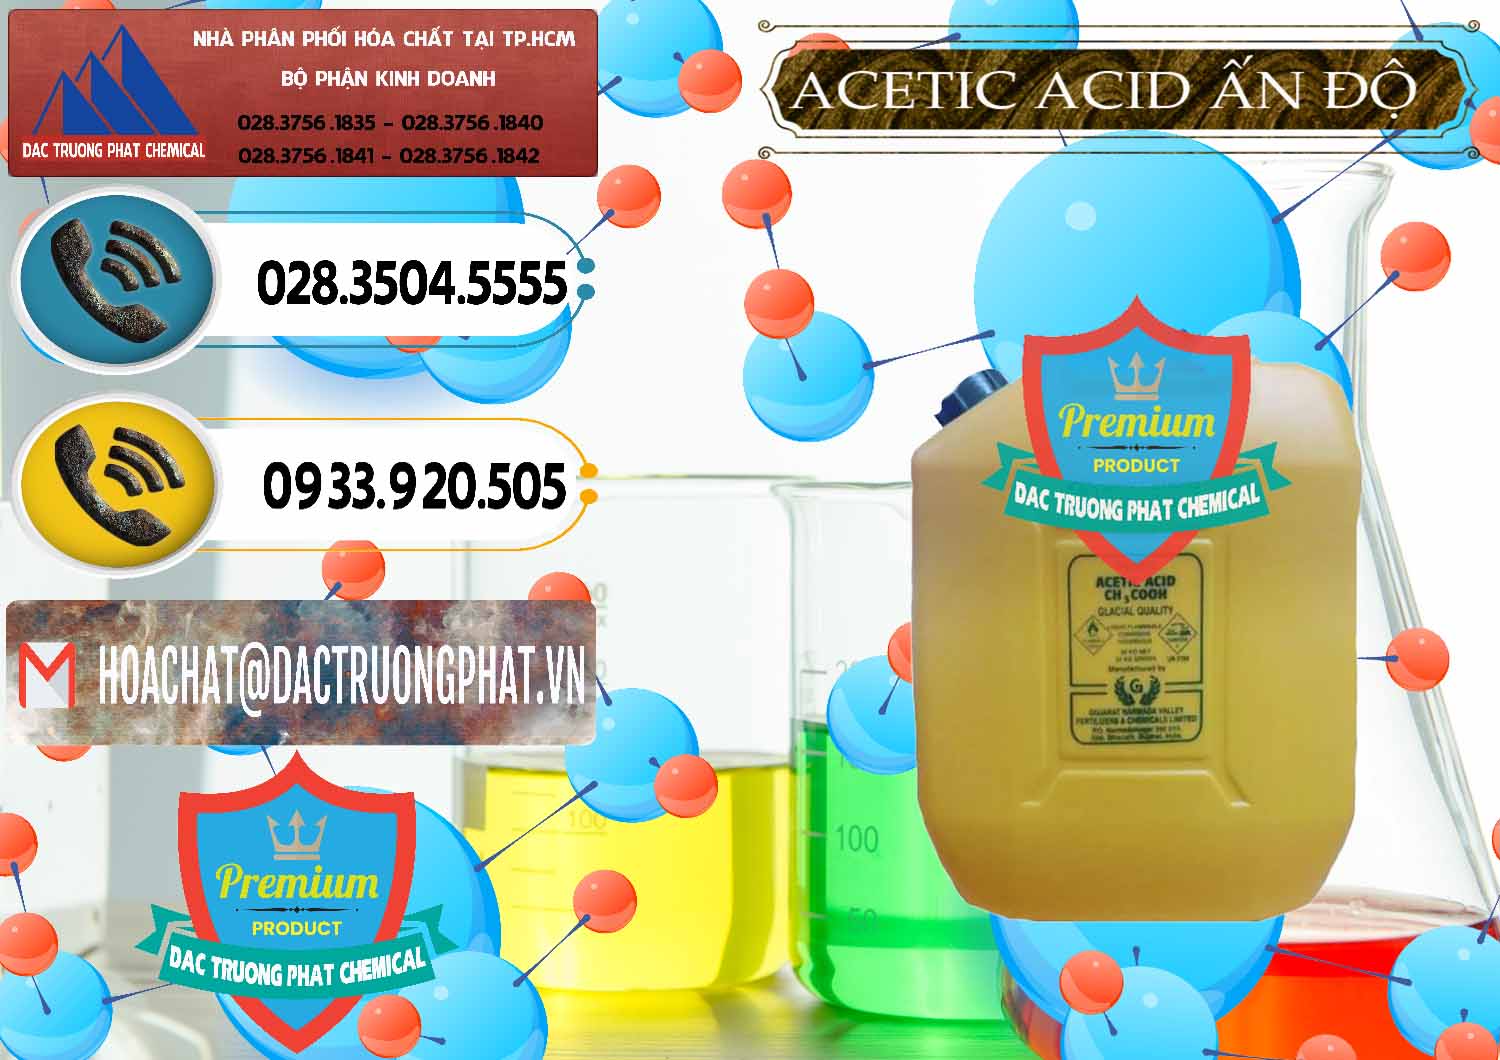 Kinh doanh _ bán Acetic Acid – Axit Acetic Ấn Độ India - 0359 - Cung cấp - kinh doanh hóa chất tại TP.HCM - hoachatdetnhuom.vn